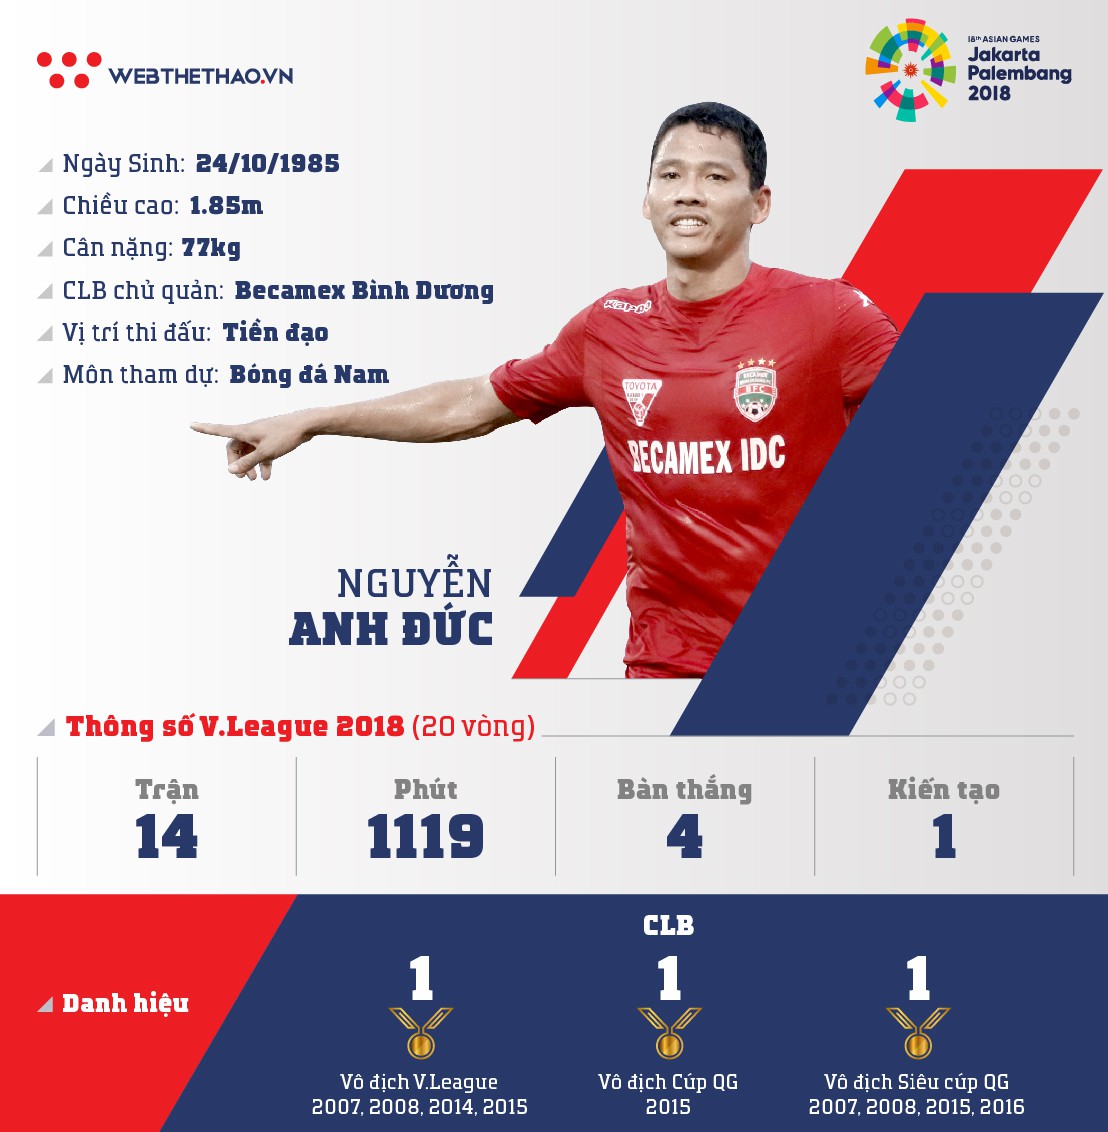 Thông tin tiền đạo Nguyễn Anh Đức cùng U23 Việt Nam chuẩn bị ASIAD 2018 - Ảnh 1.